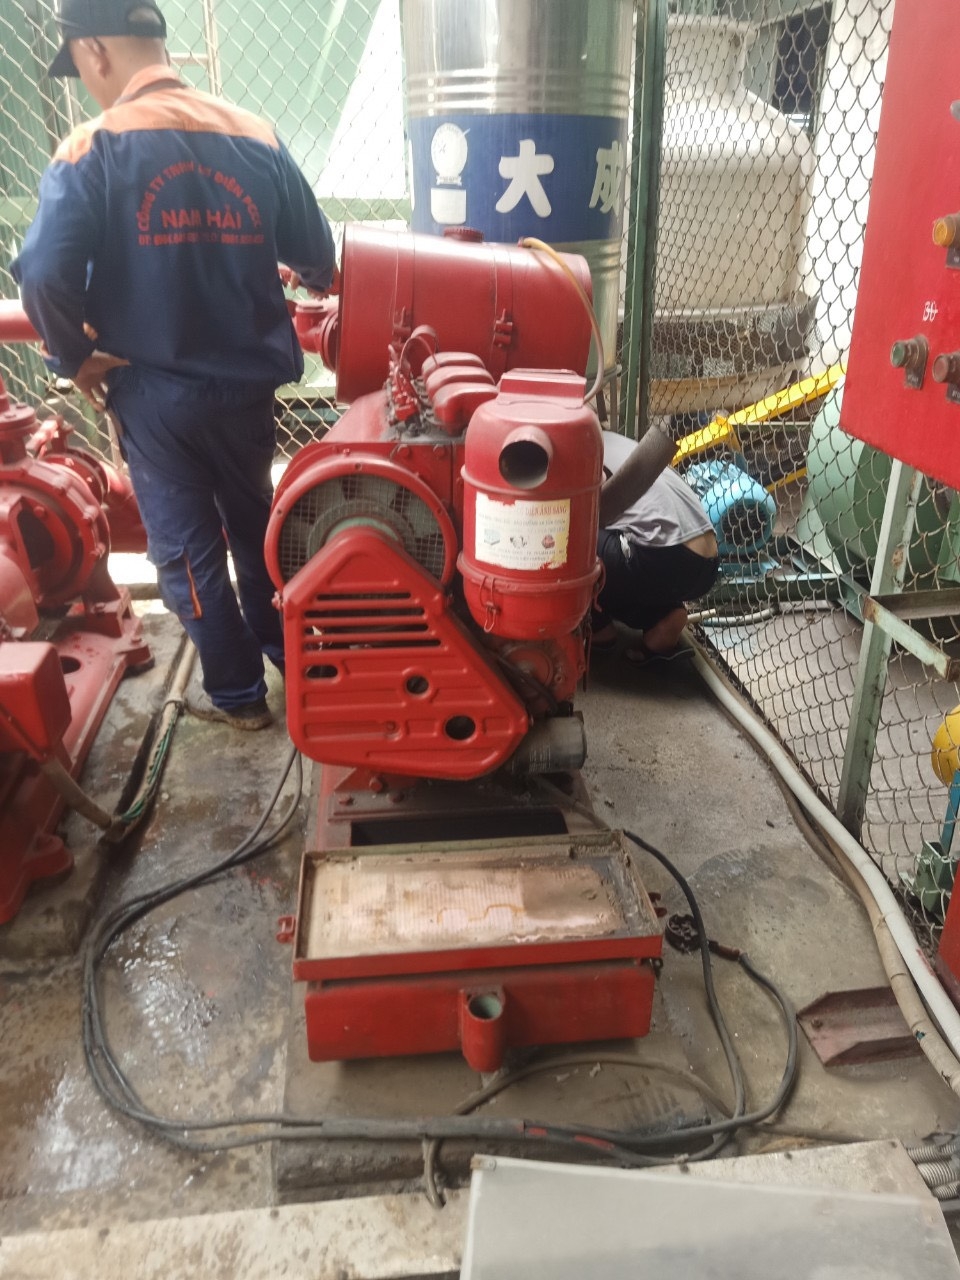 Bảo trì: Bảo dưỡng và sửa chữa máy bơm công nghiệp - Khu công nghiệp Tân bình 